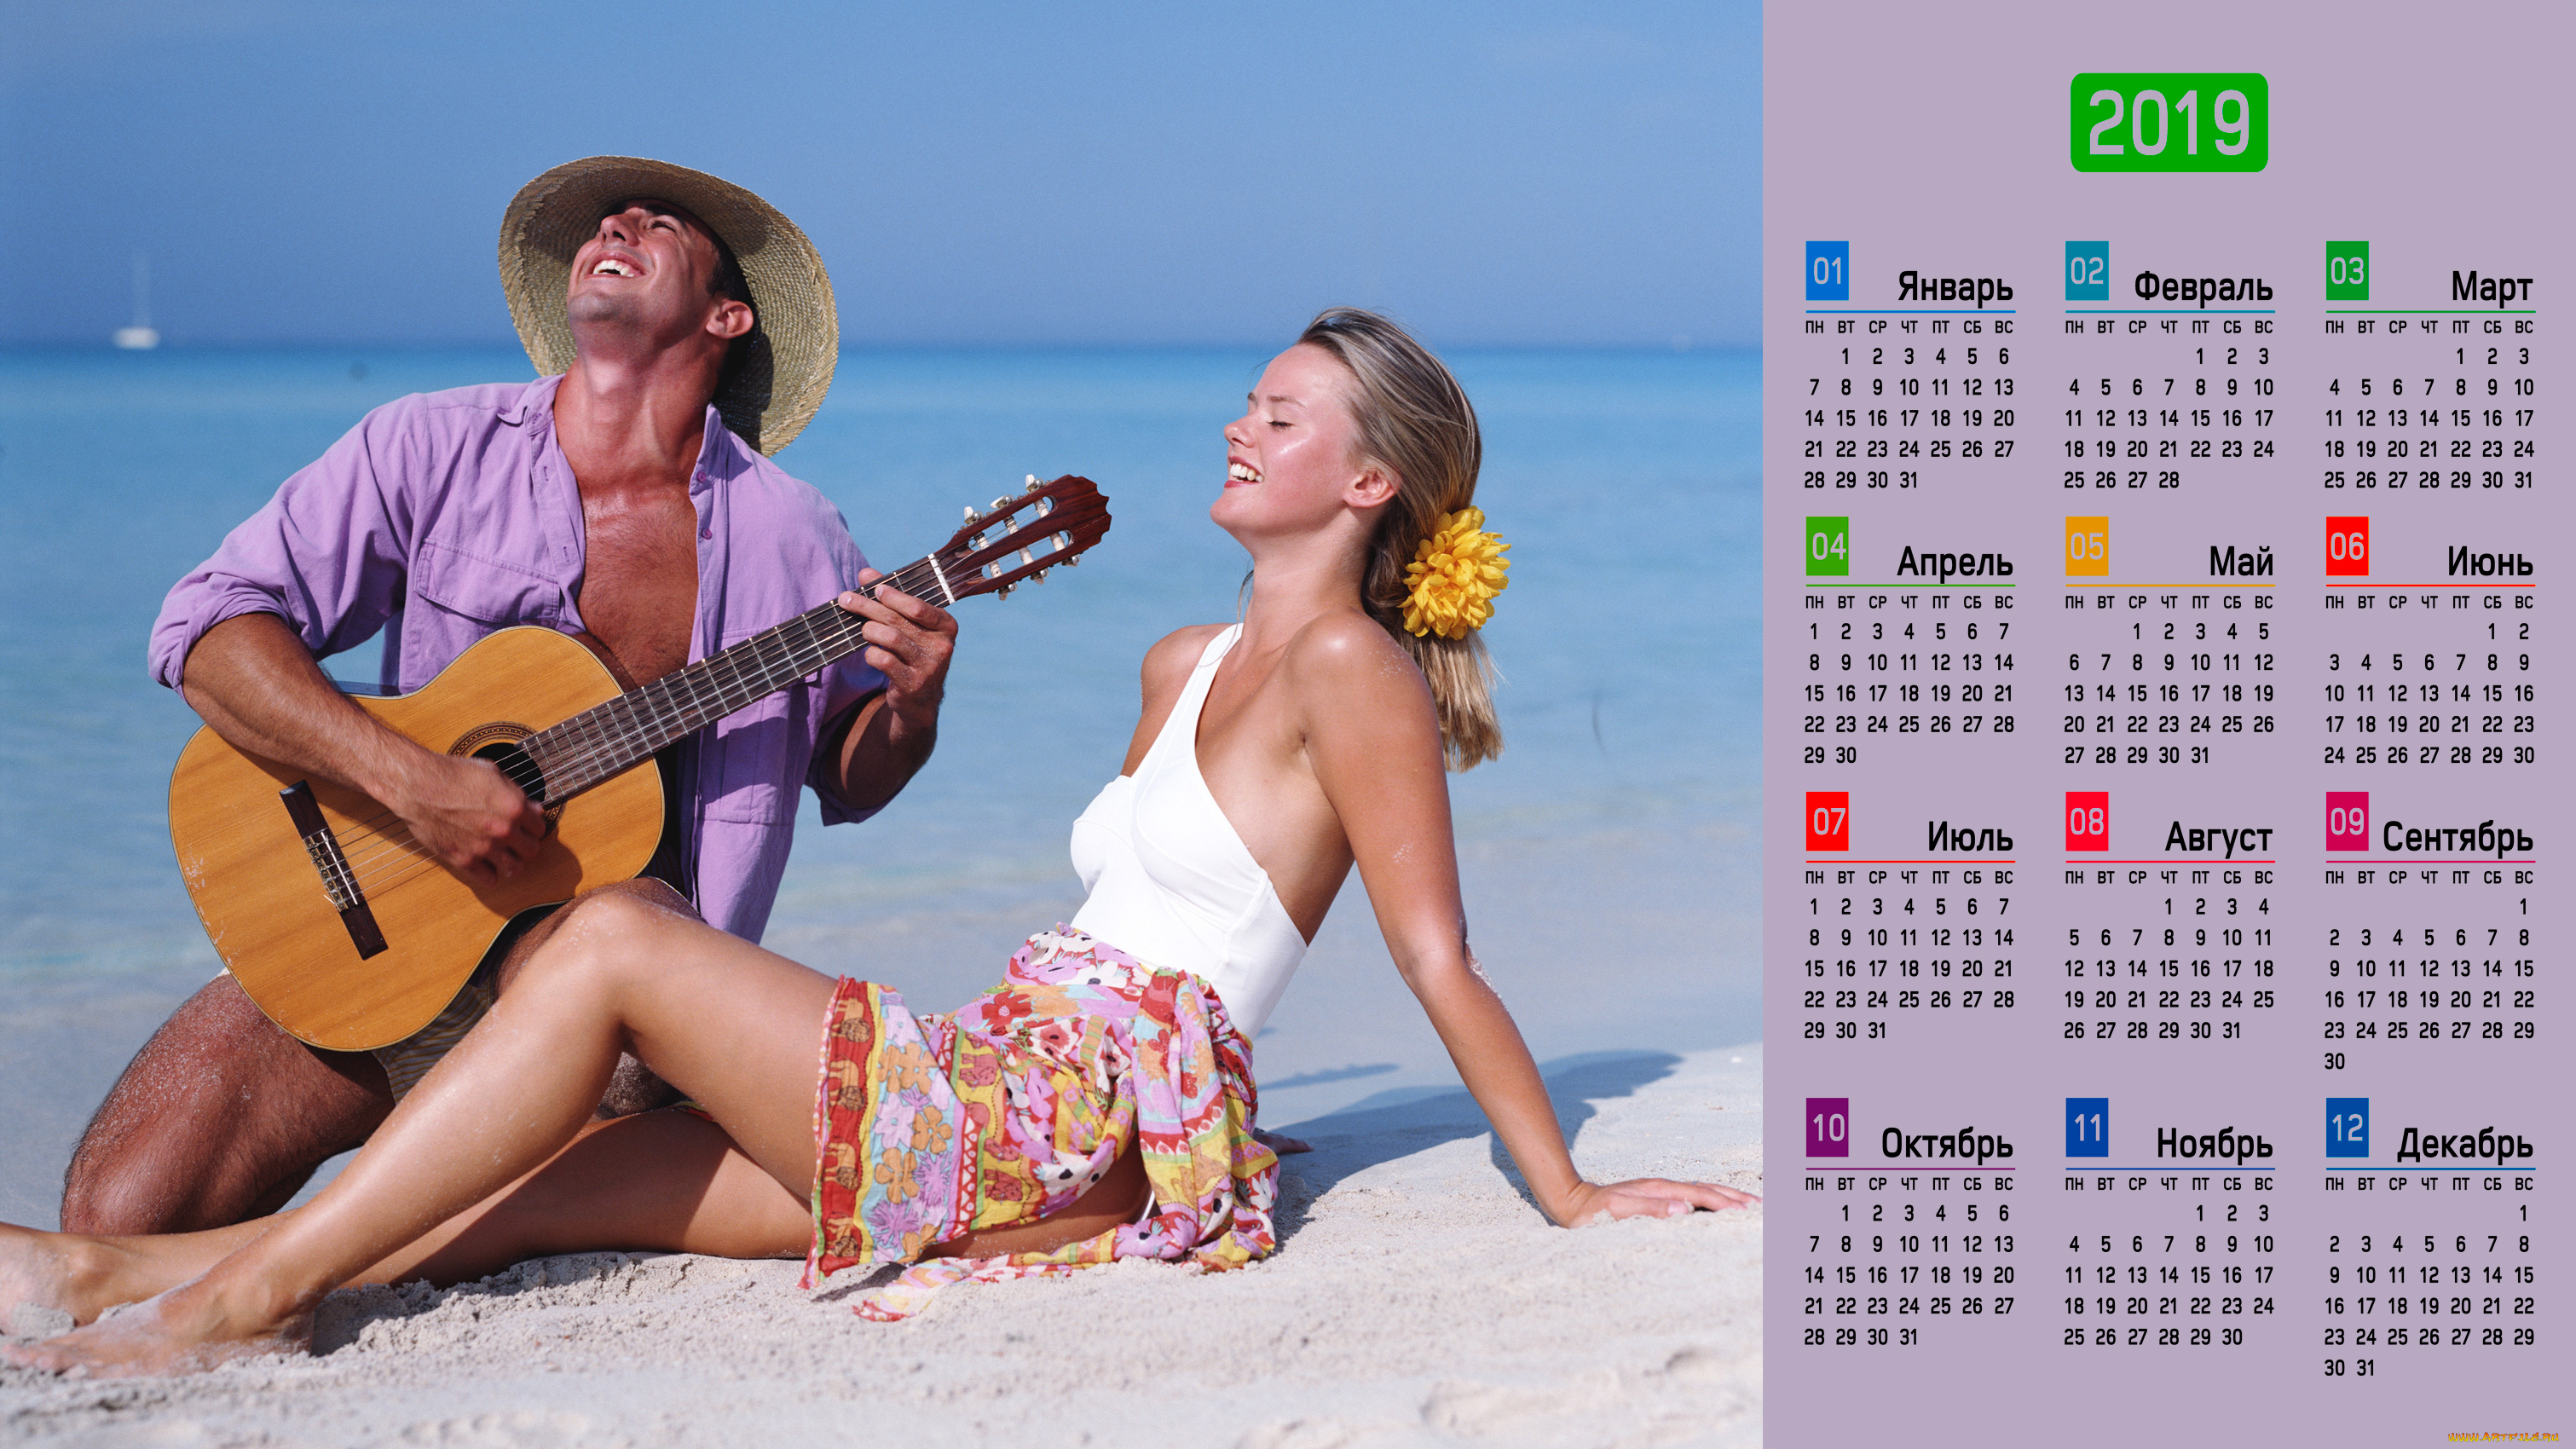 календари, люди, песок, шляпа, гитара, девушка, мужчина